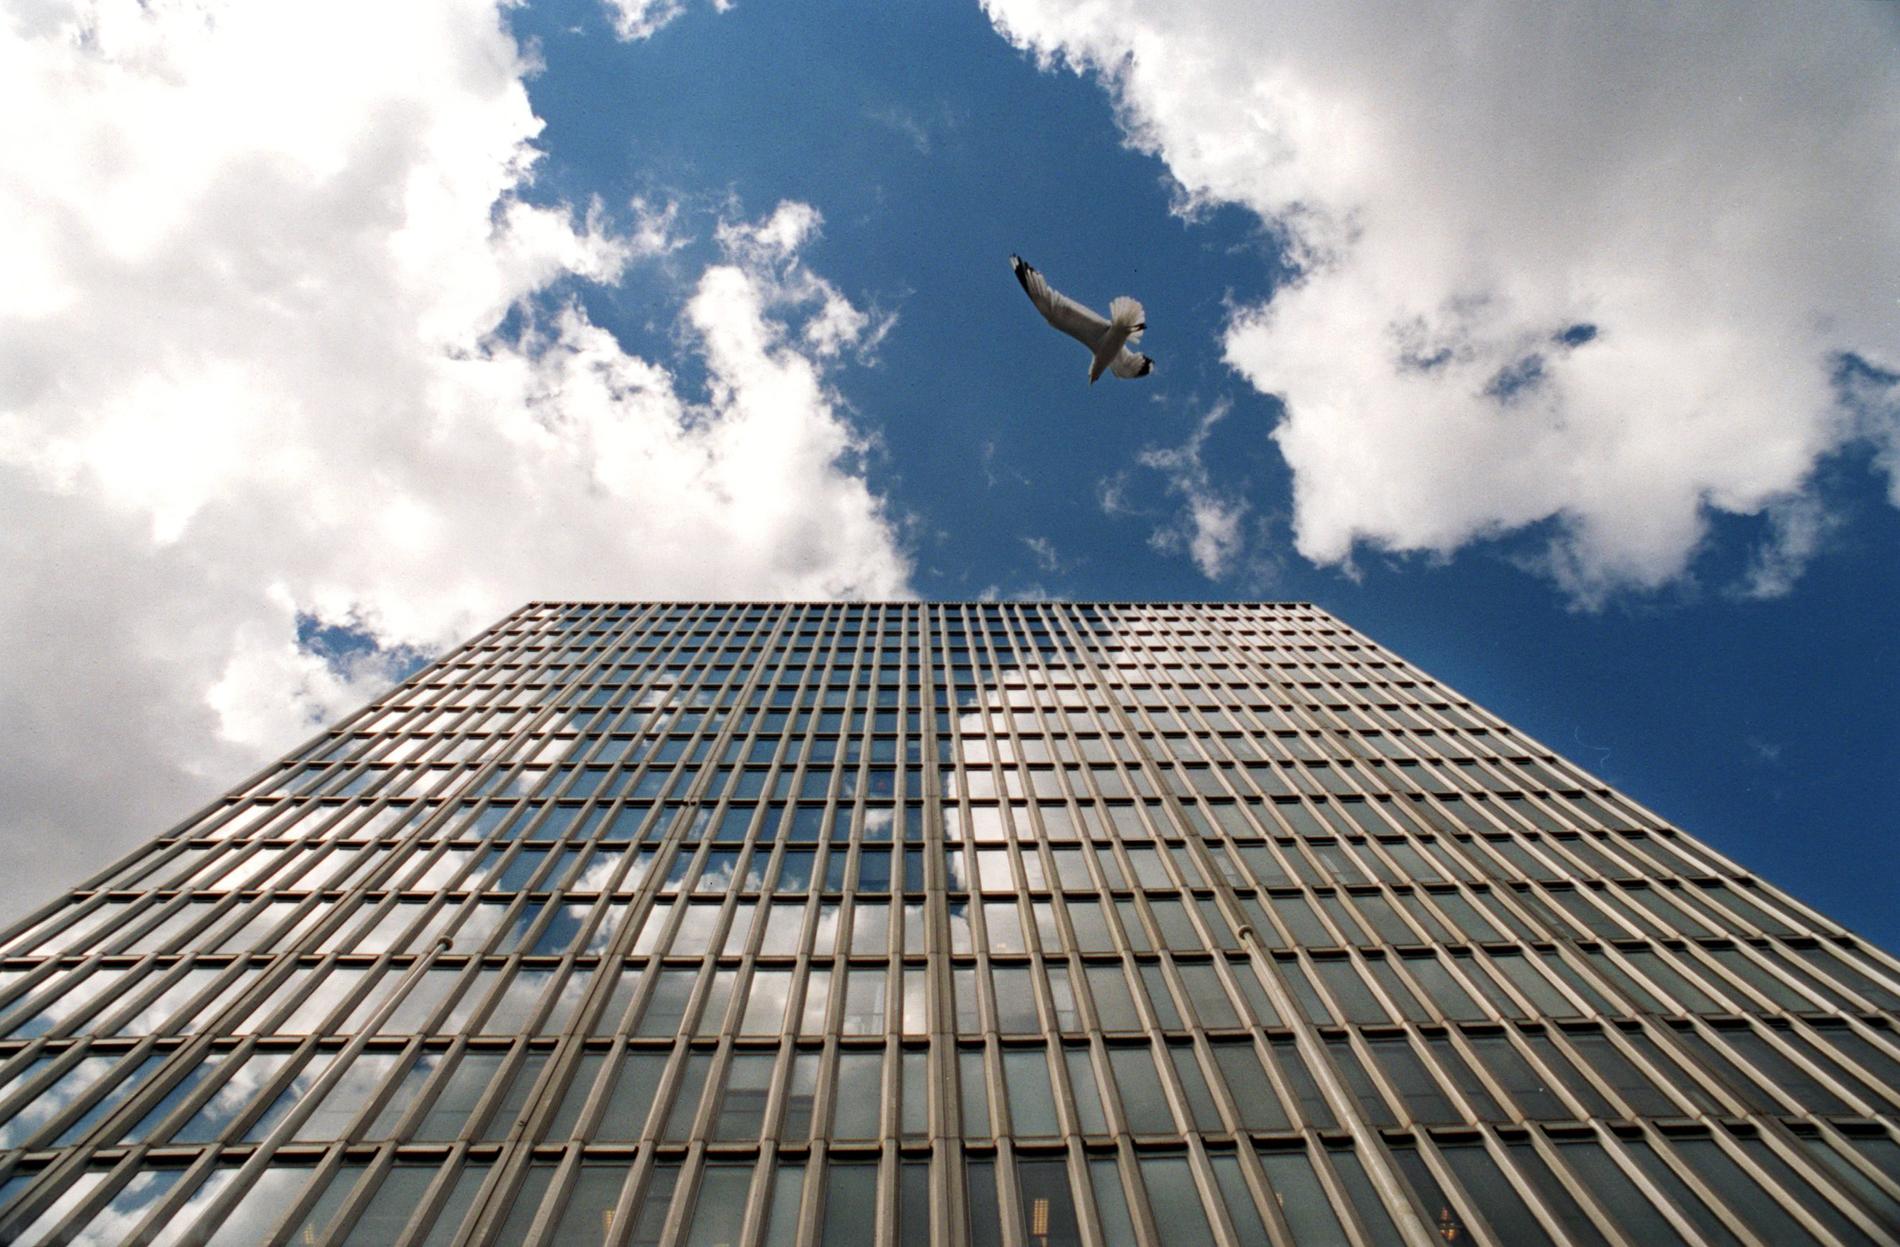 Fåglar tror att spegelbilden i glastäckta skyskrapor är det verkliga föremålet.